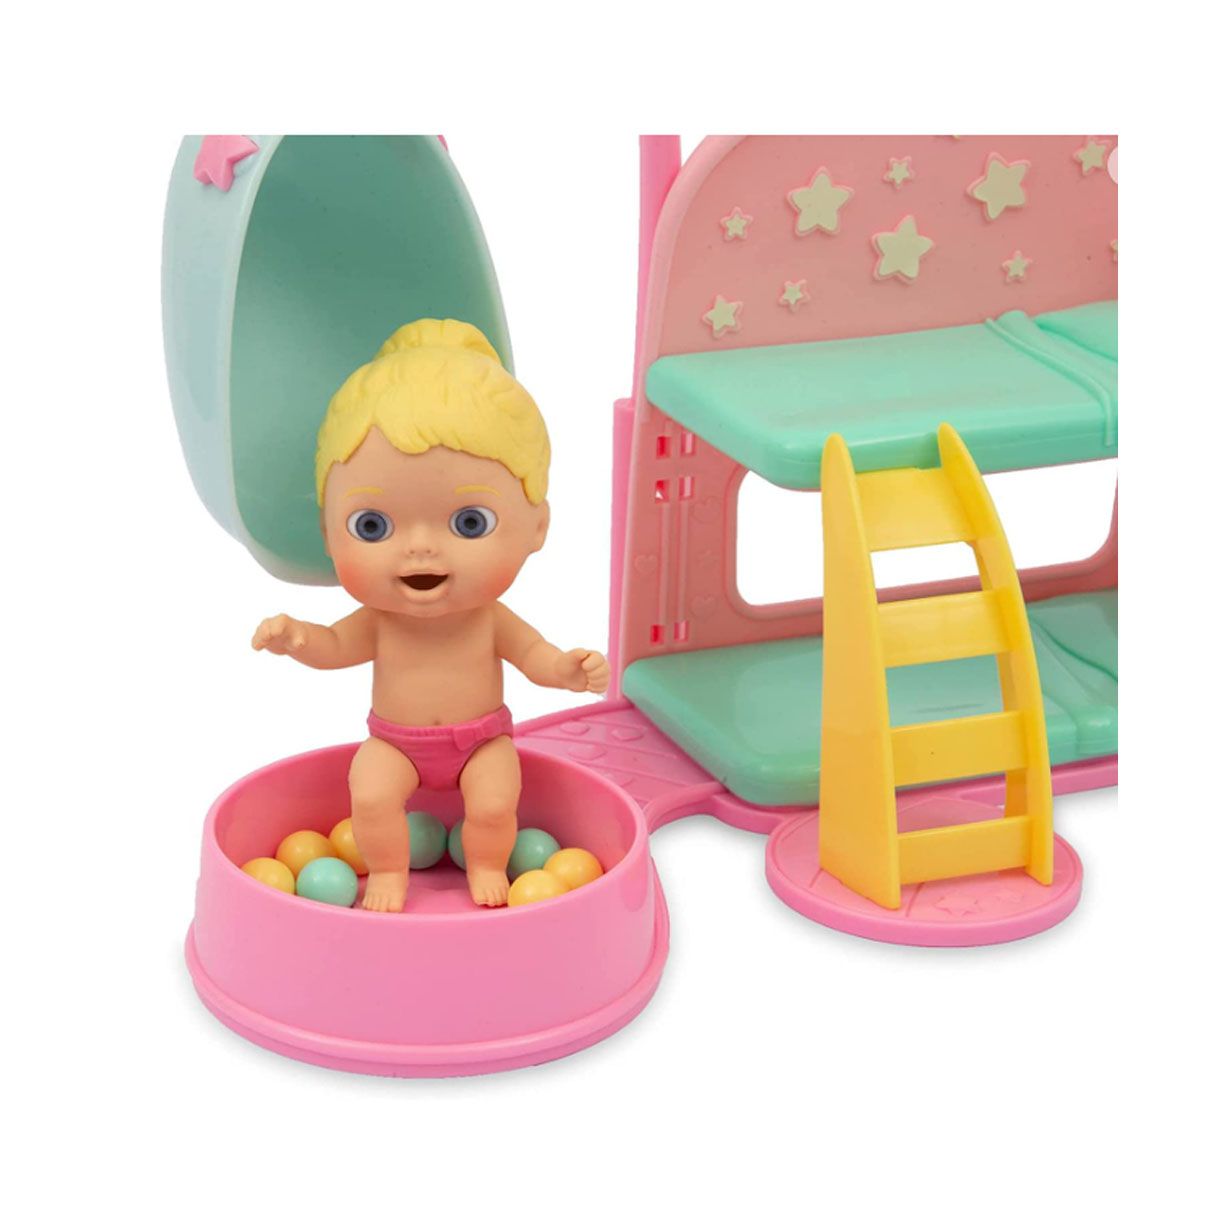 cicciobello - amiccici dream time, set de juguete con un muñeco bebé pequeño y blandito, con una camita y varios accesorios, y u